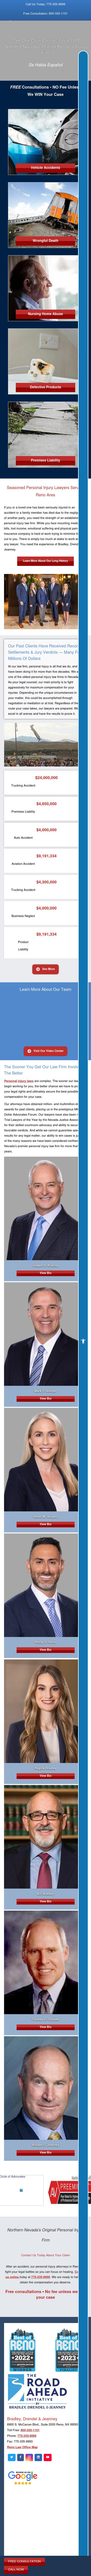 Bradley Drendel & Jeanney - Reno NV Lawyers